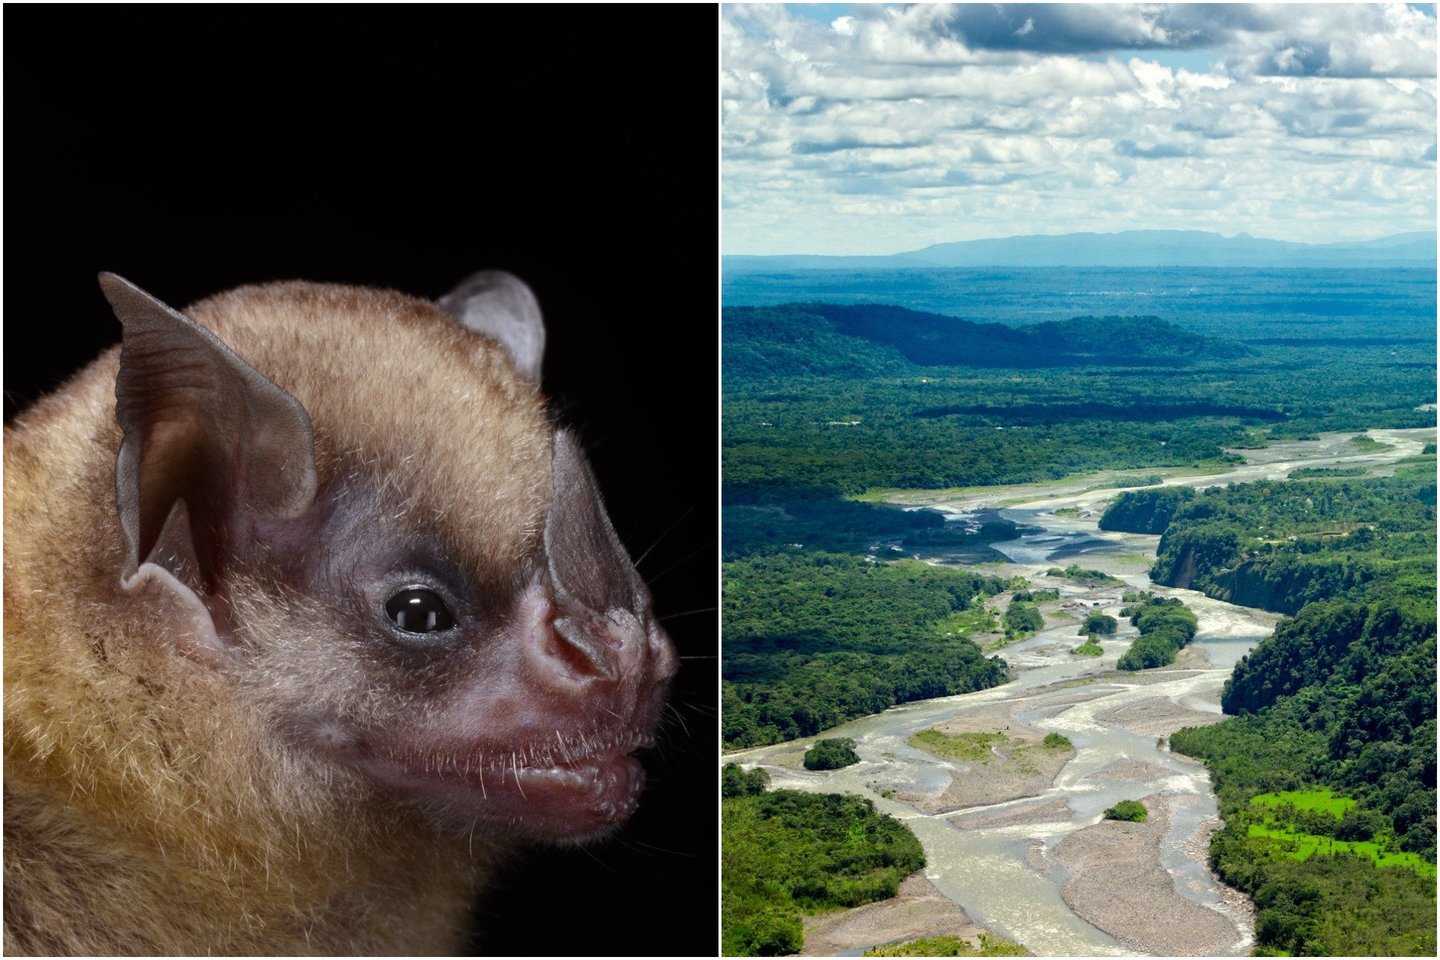  Tildos geltonpetis šikšnosparnis – viena iš daugybės šikšnosparnių rūšių, gyvenančių Brazilijos miškuose.<br> Wikimedia commons / 123rf nuotr.